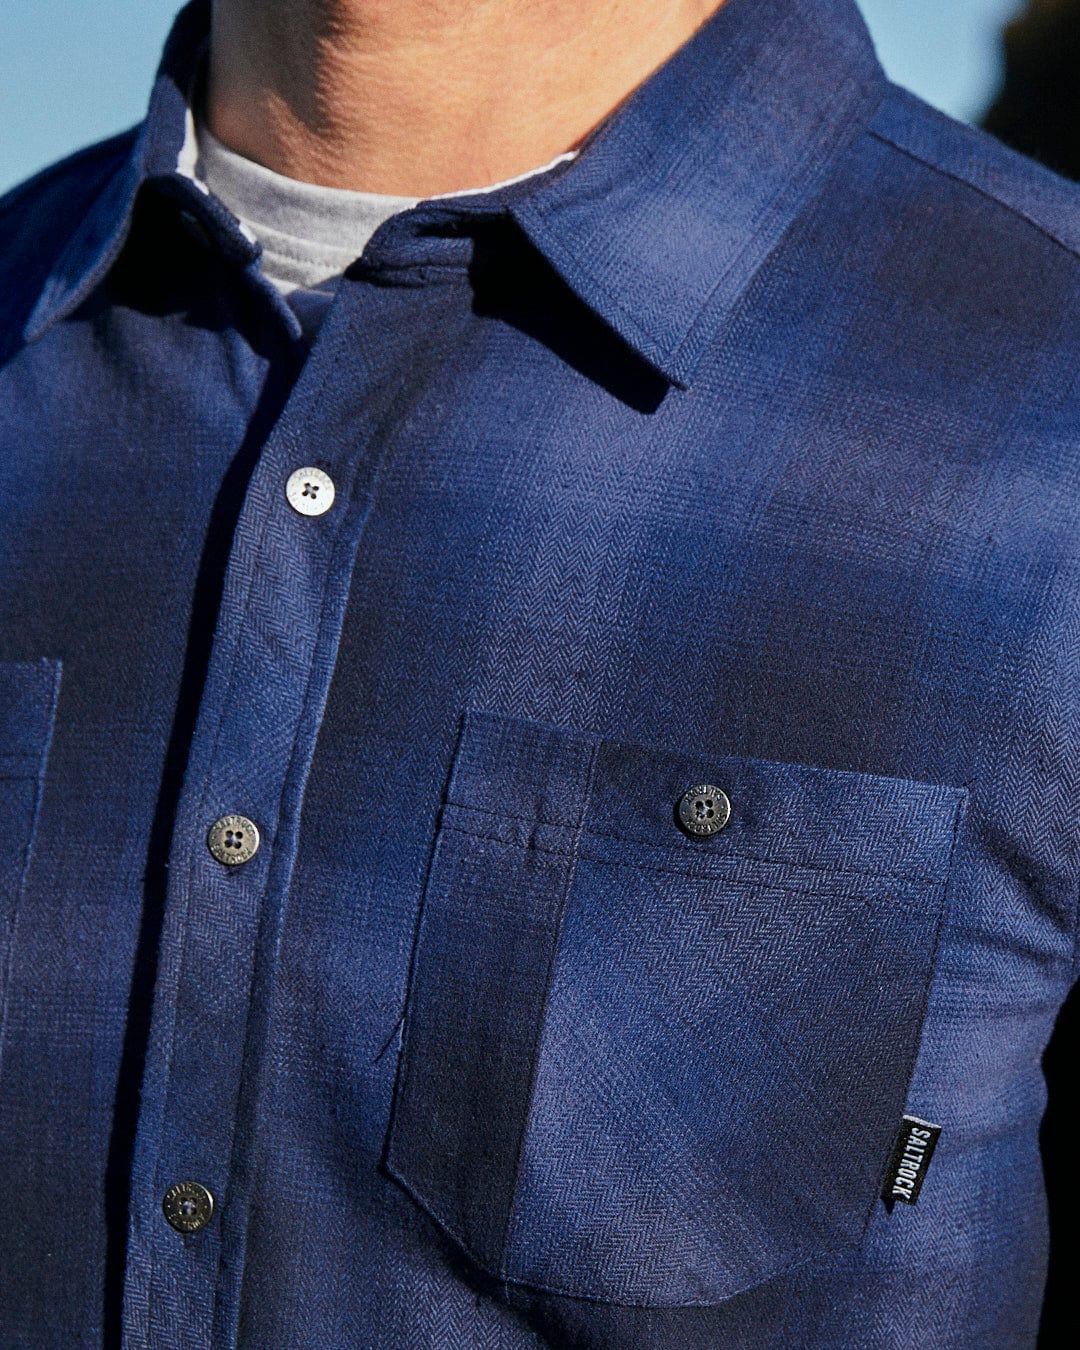 Description: A man wearing a Saltrock Farris - Mens Check Shirt - Blue made from 100% cotton.